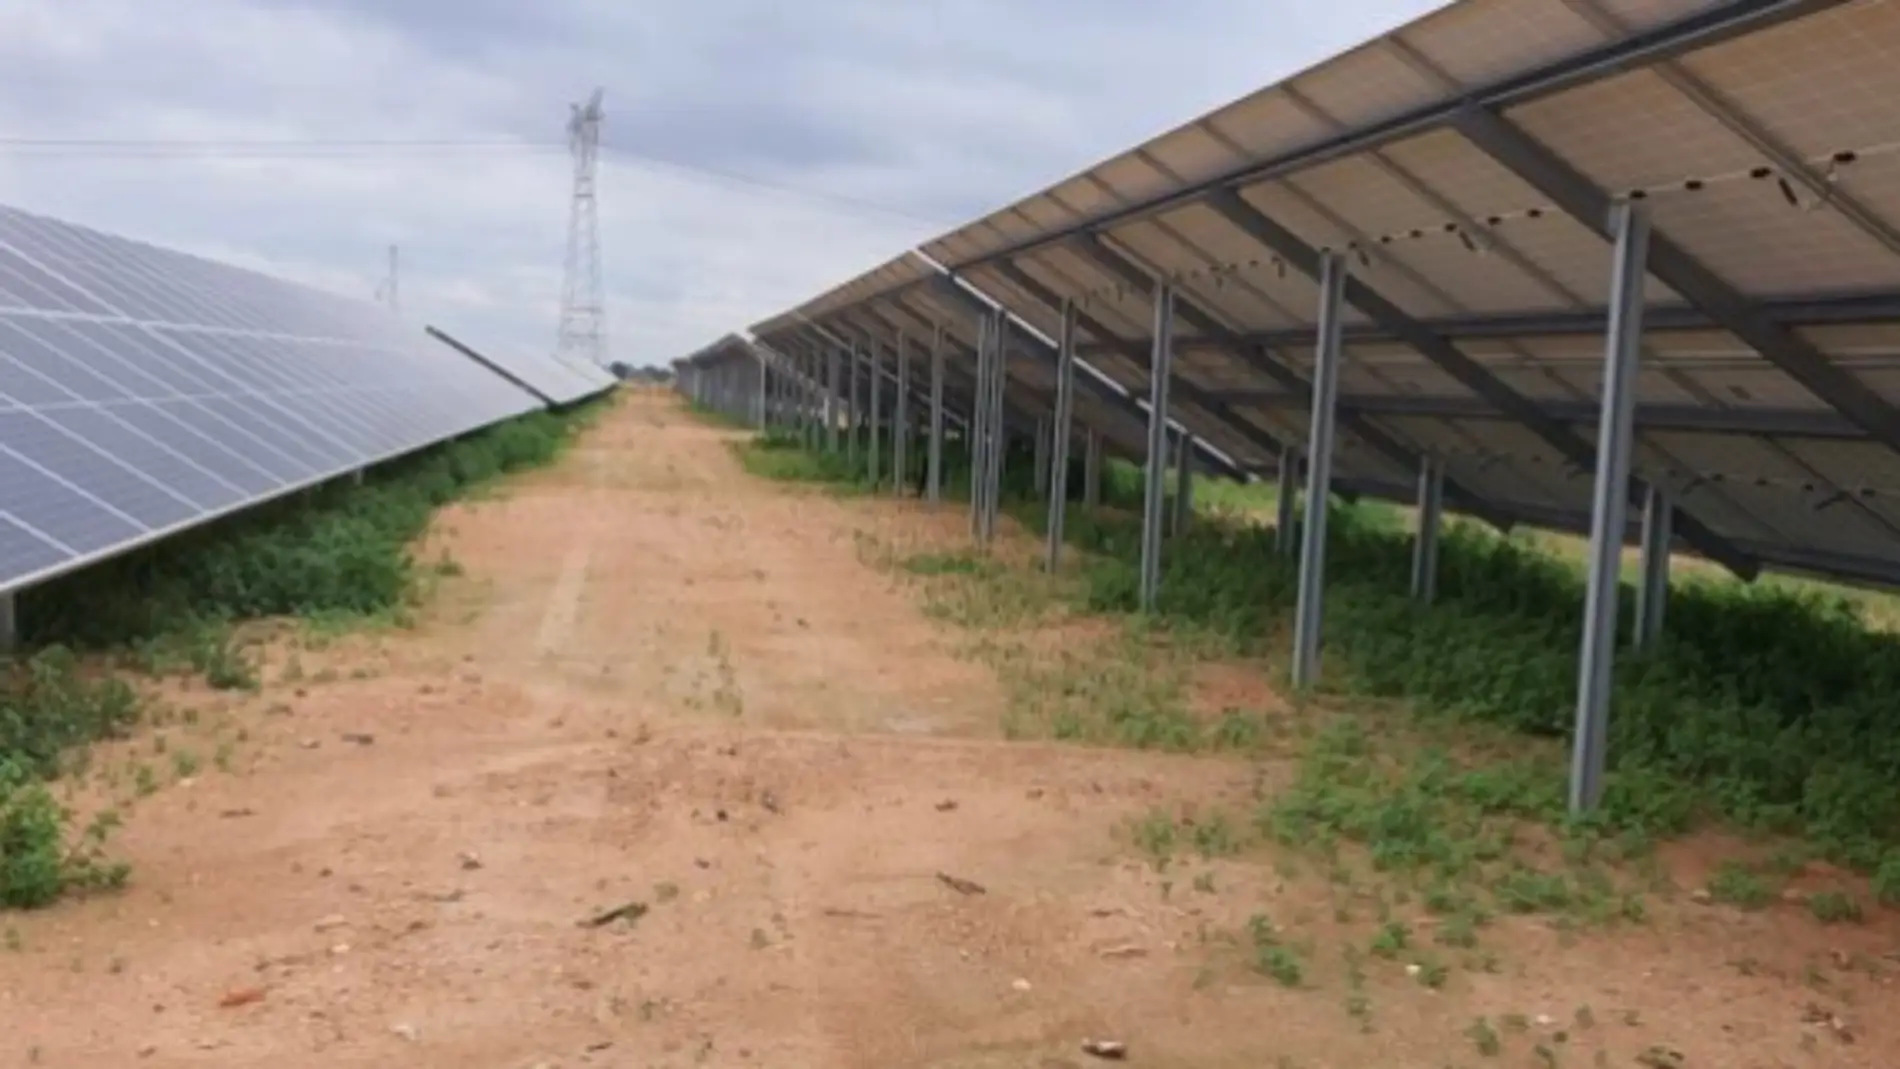 Las plantas fotovoltaicas proyectadas en Campo de Cartagena y entorno del Mar Menor ocupan casi 1000 hectáreas